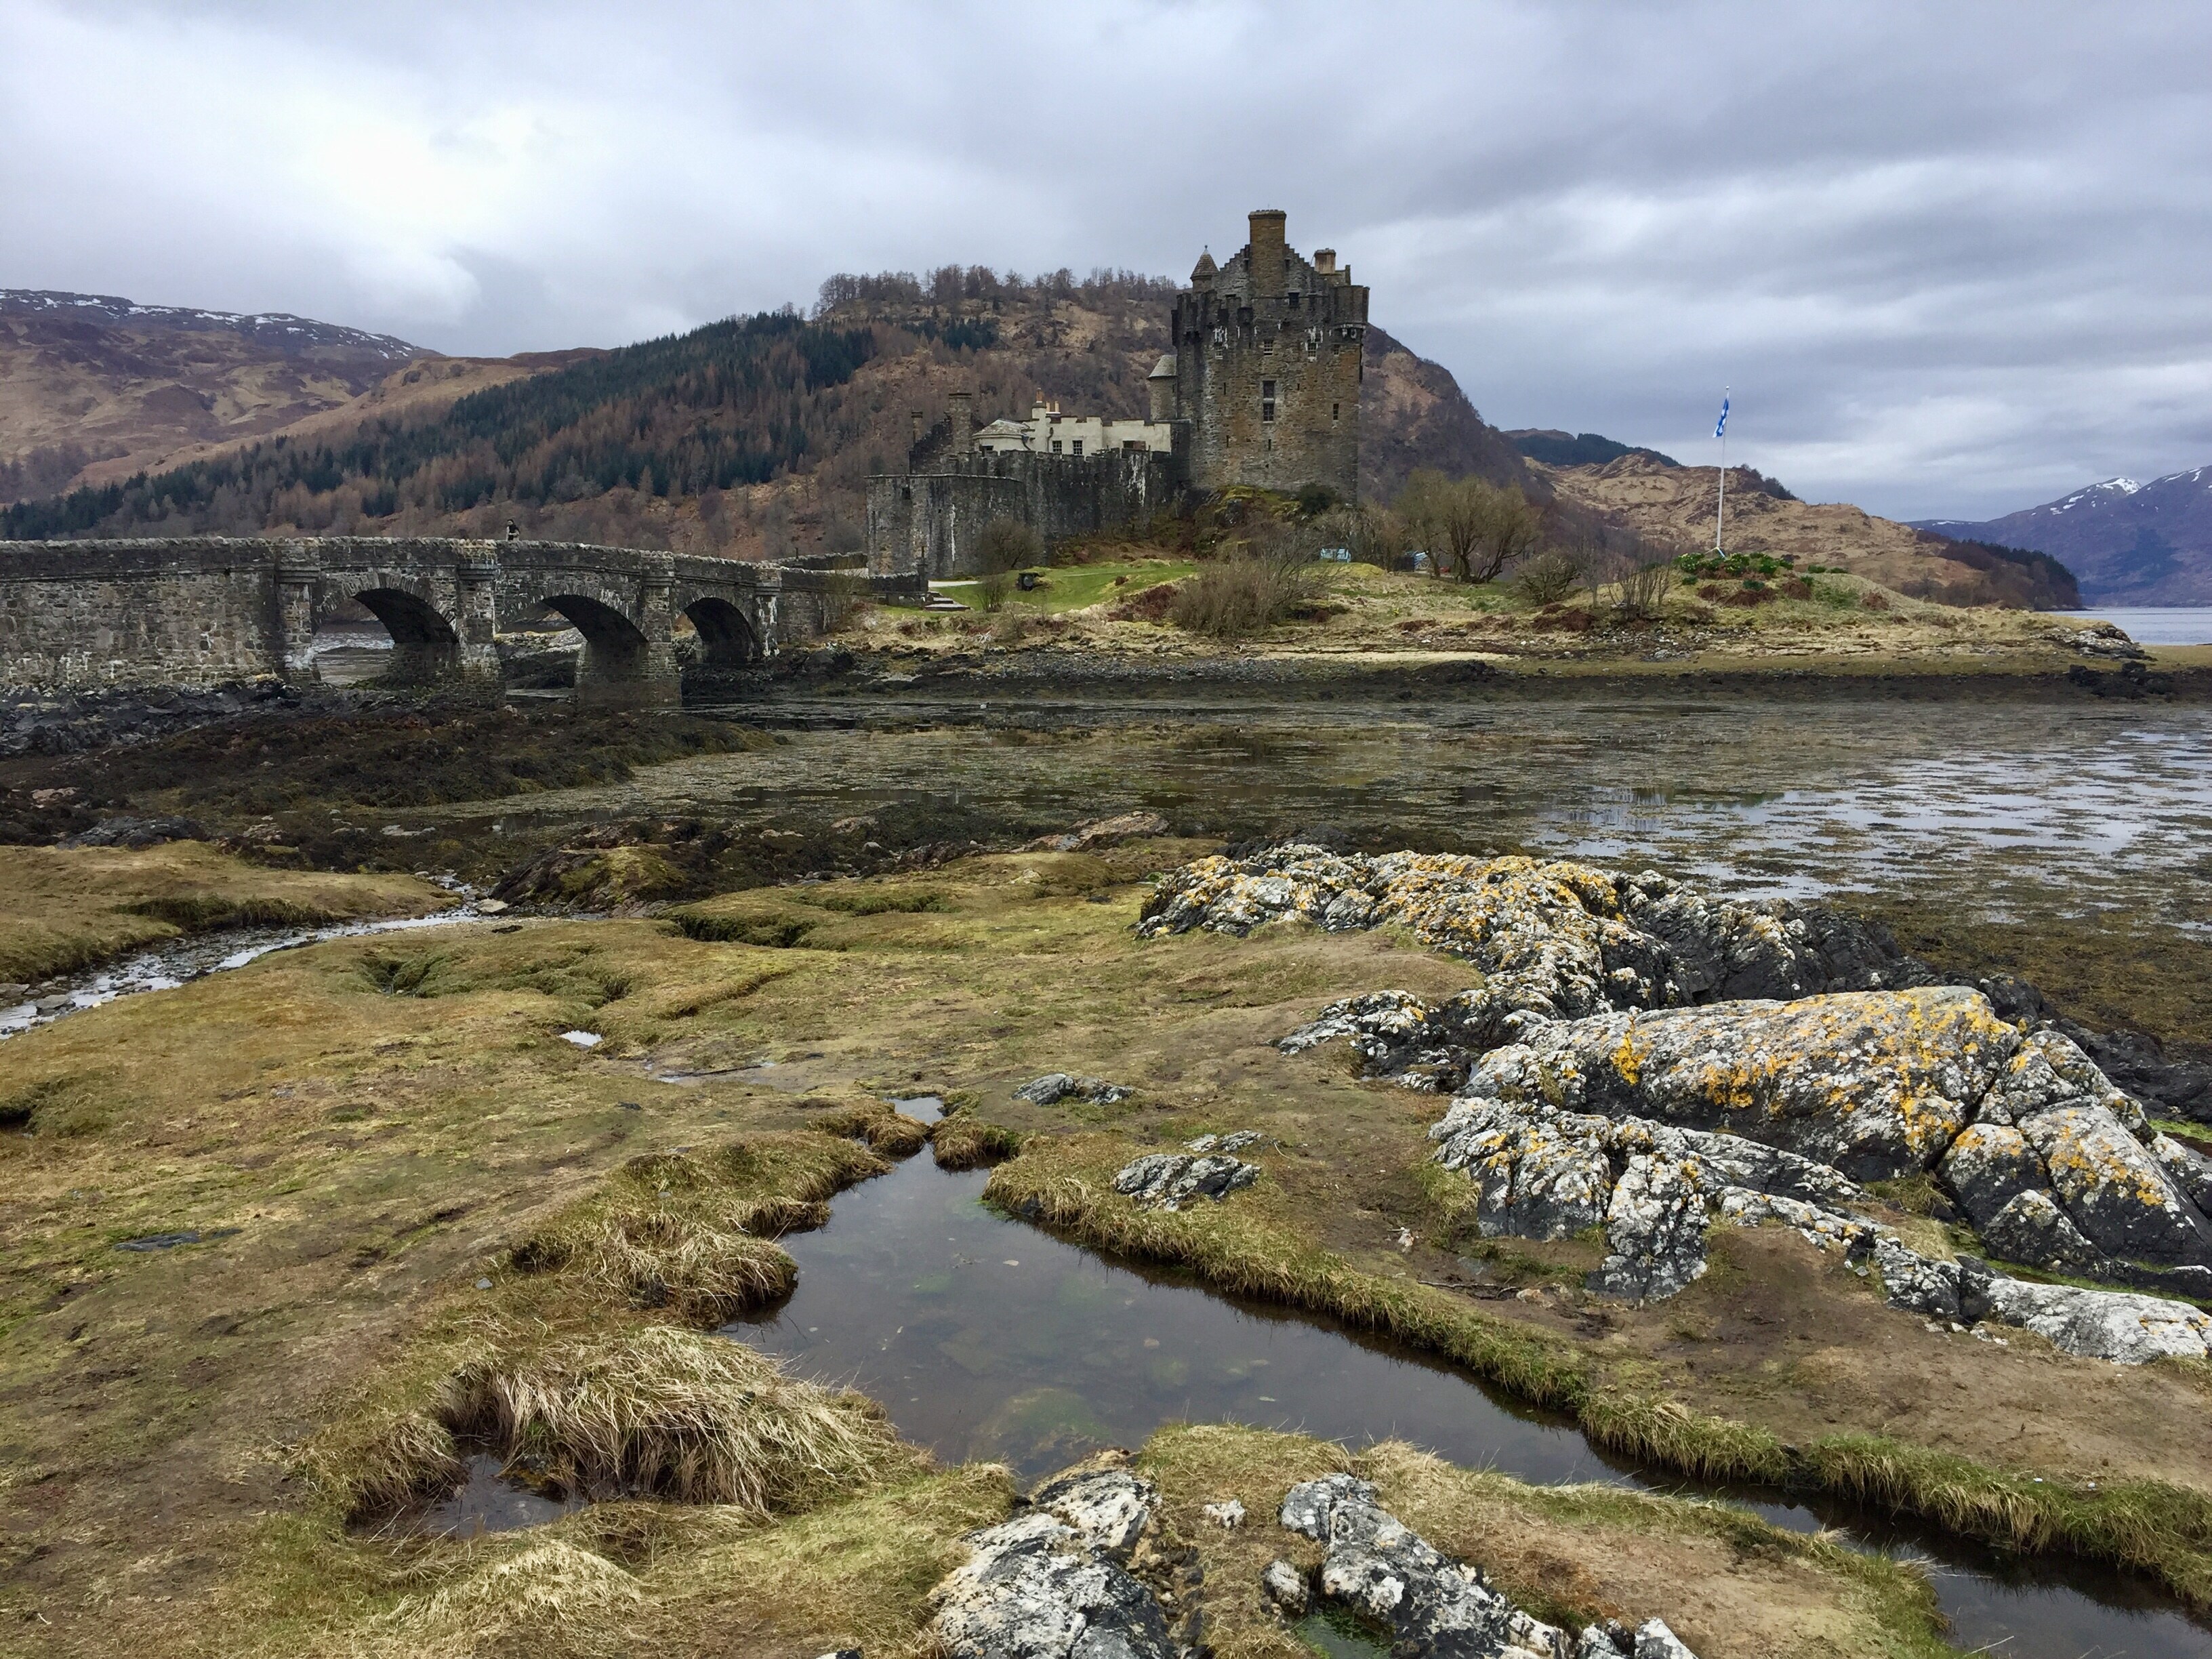 Las tierras altas escocesas combinan paisajes majestuosos con zonas inhóspitas y deshabitadas que han contribuido a forjar el carácter duro y fuerte de sus habitantes